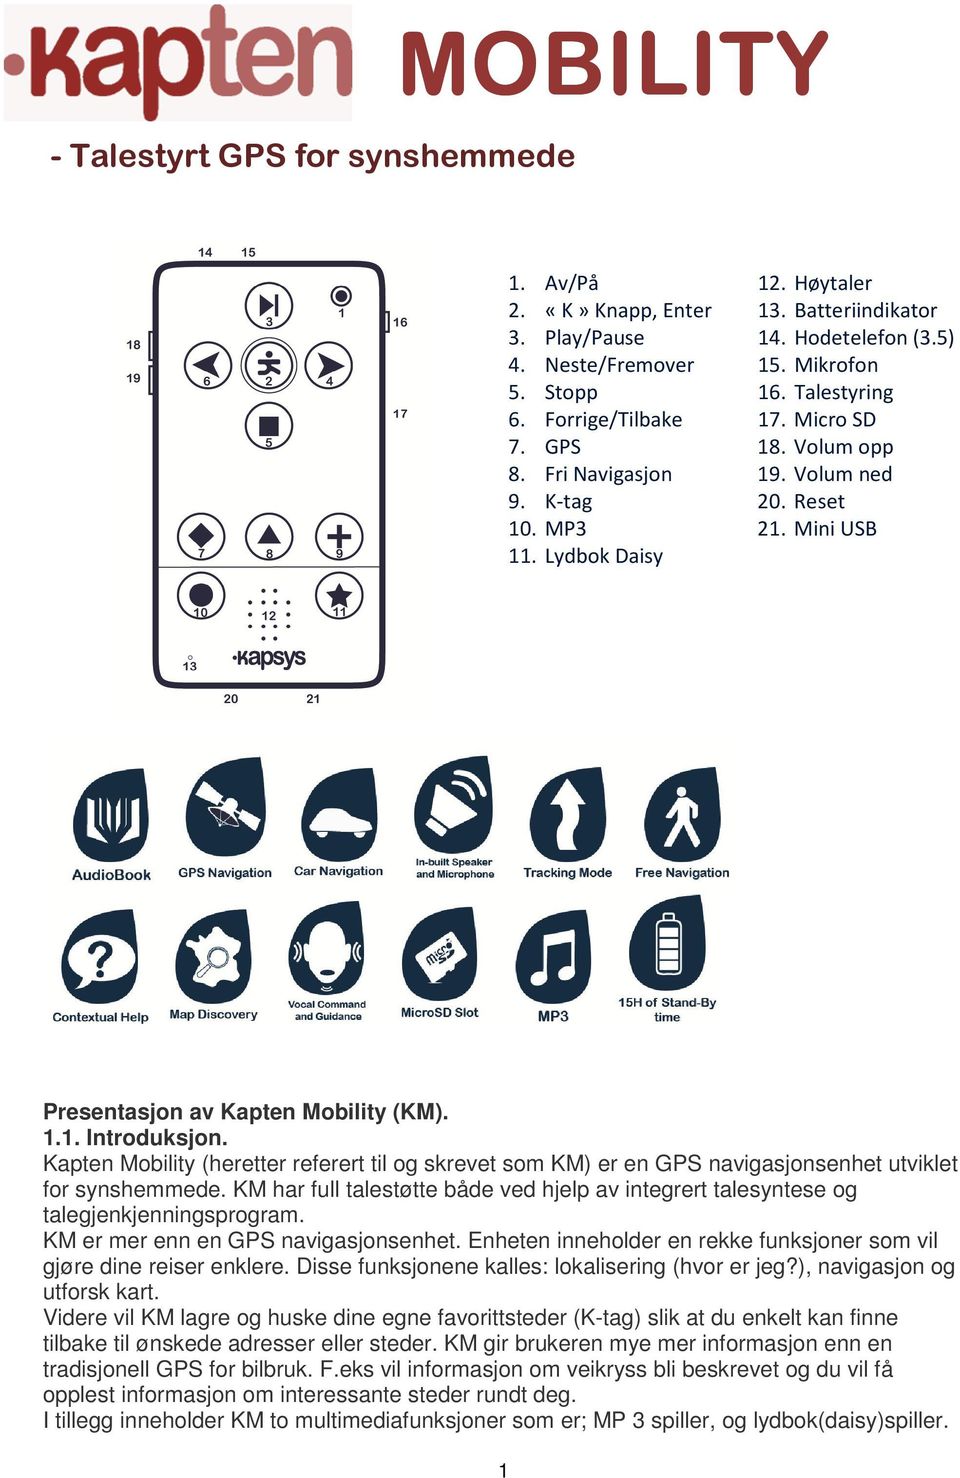 Kapten Mobility (heretter referert til og skrevet som KM) er en GPS navigasjonsenhet utviklet for synshemmede.